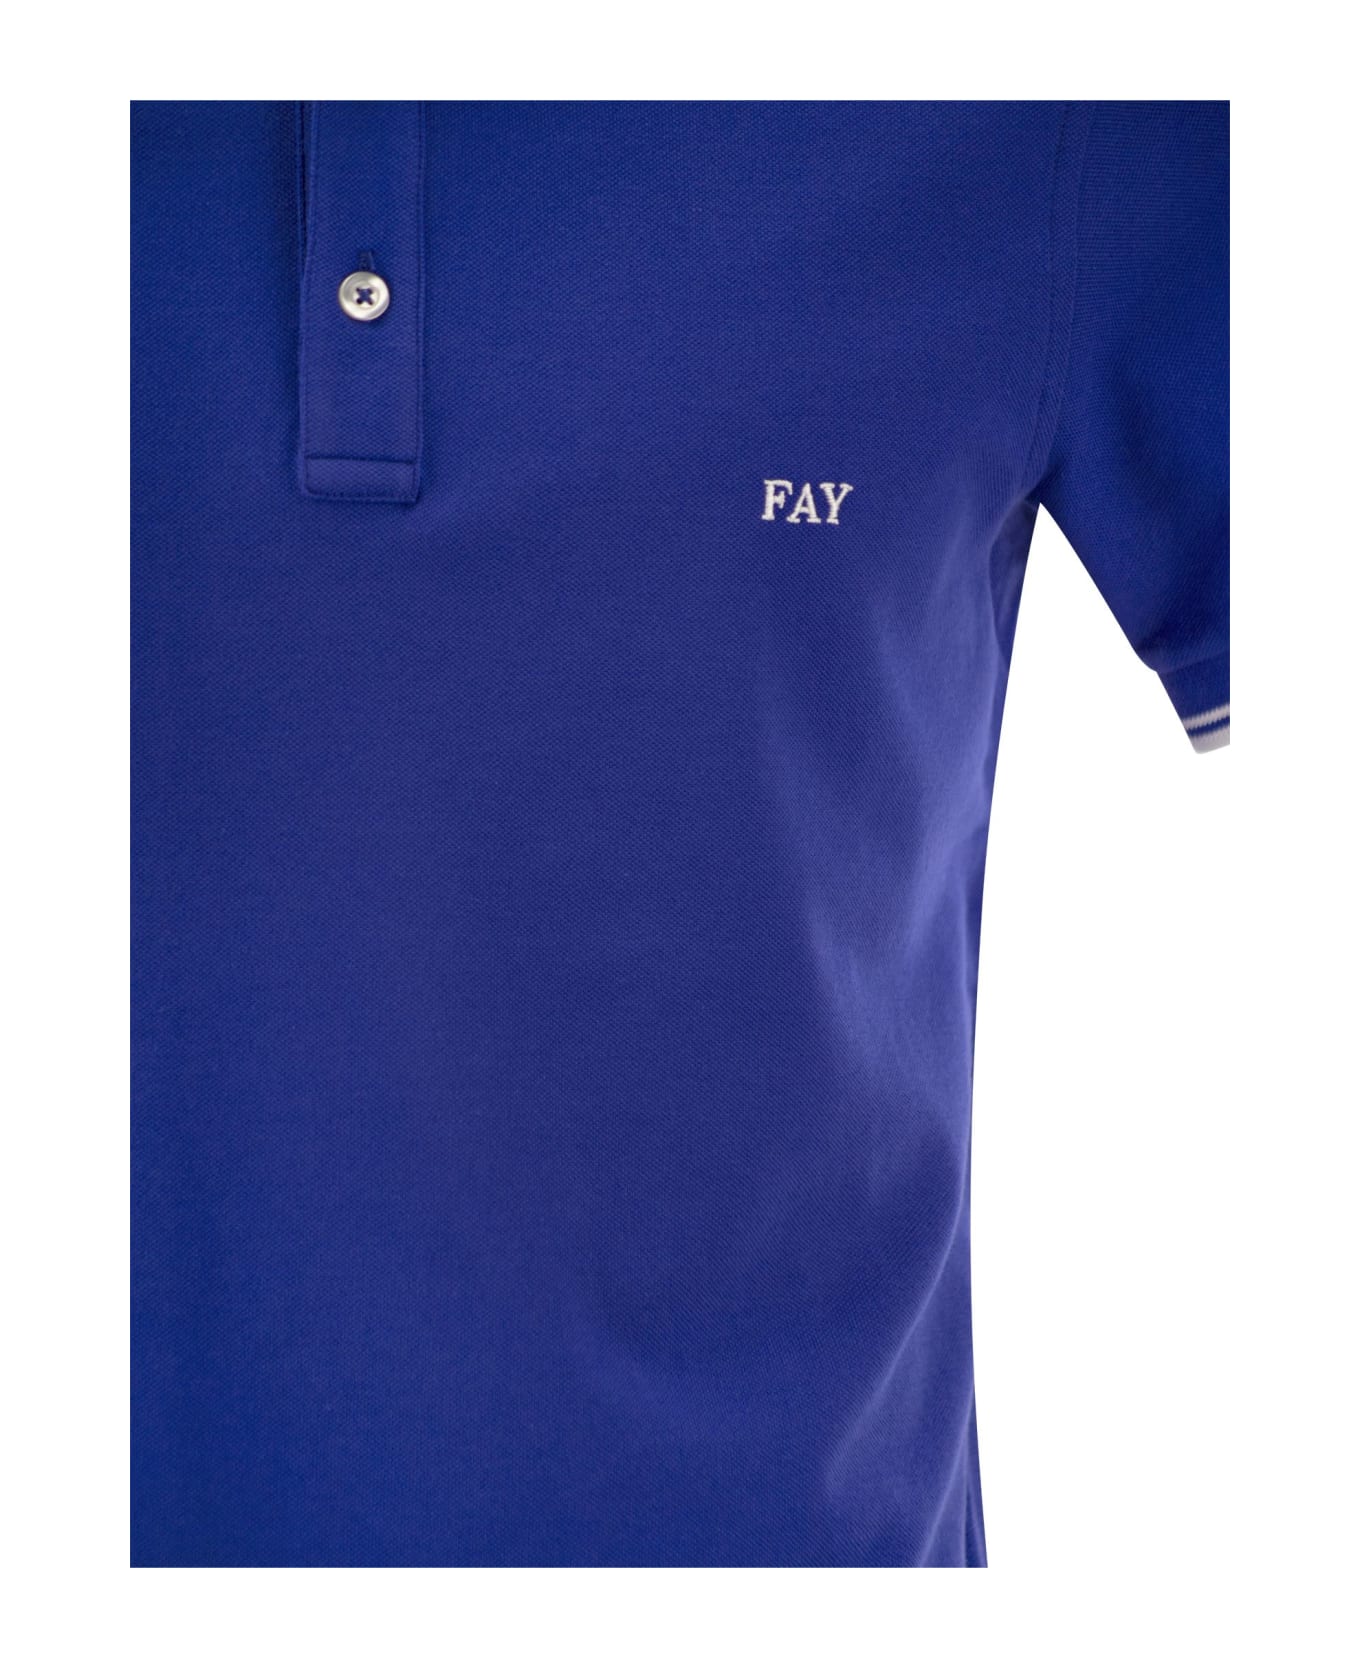 Fay Blue Polo - Bluette ポロシャツ